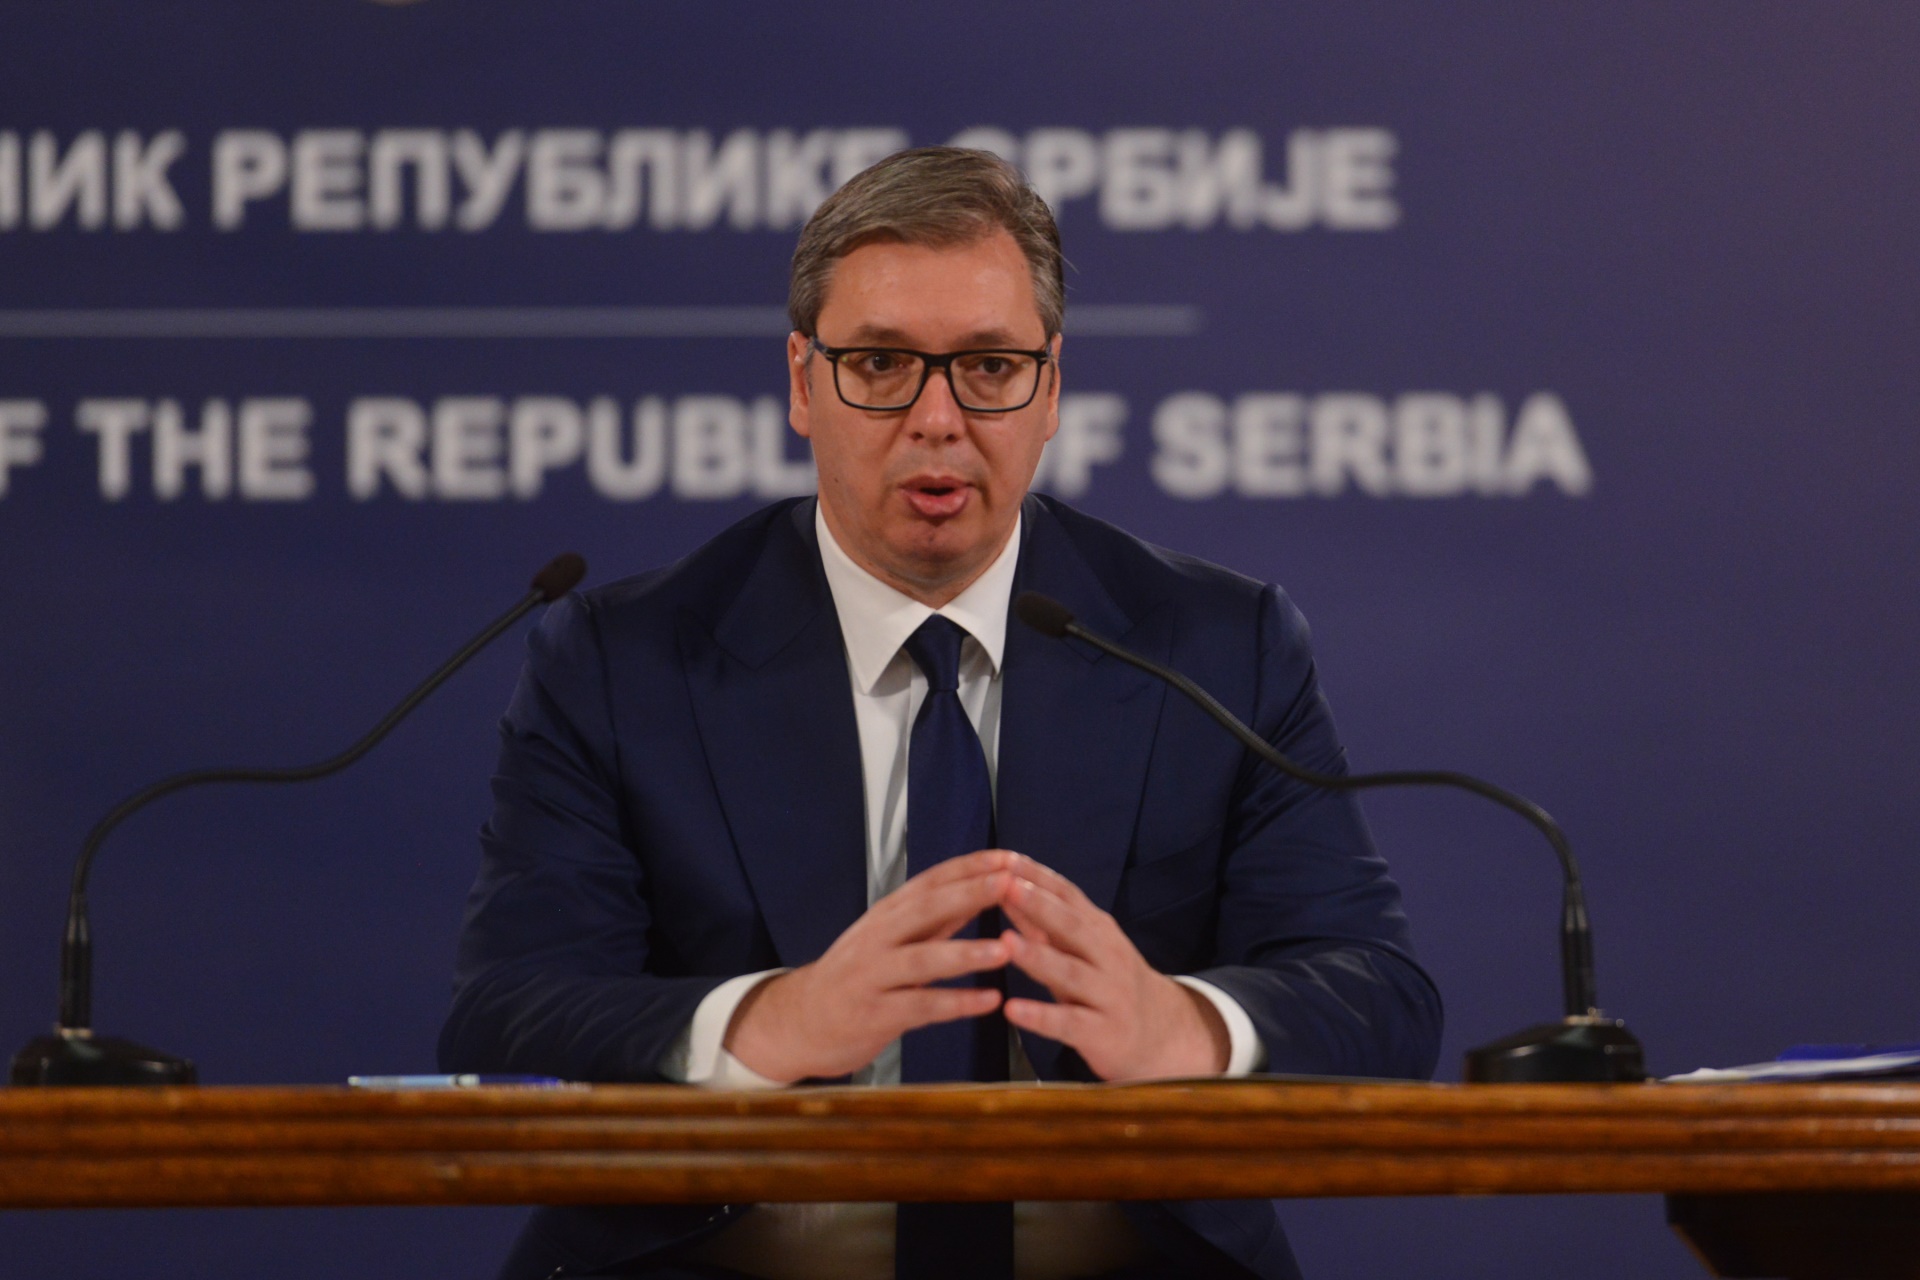 Председник Републике Србије Александар Вучић рекао је да очекује да ће успешно бити завршени разговори са радницима Фијата.